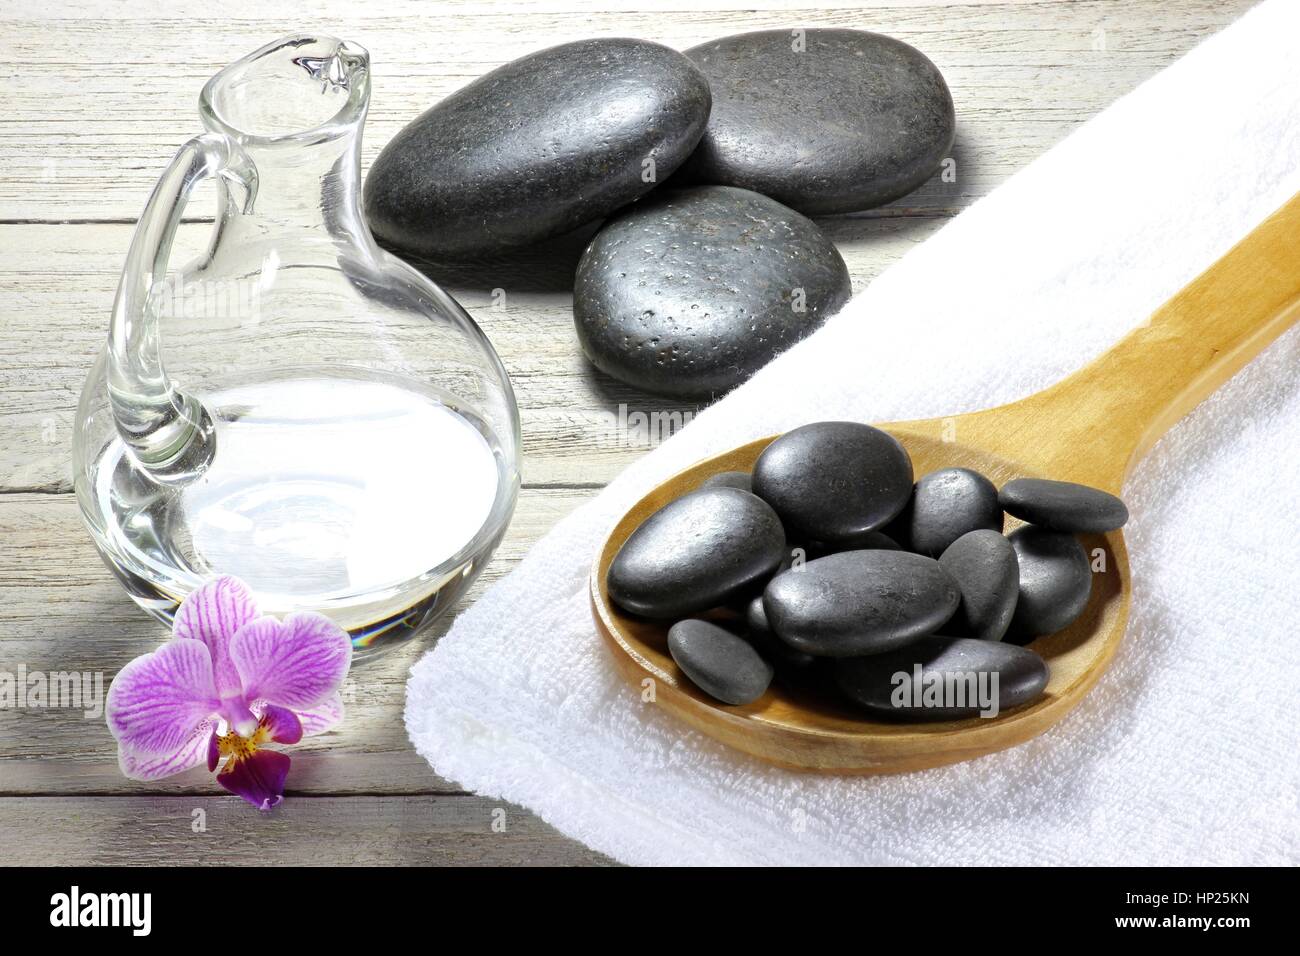 Basaltsteine für hot-Stone massage mit Zubehör auf hölzernen Hintergrund  Stockfotografie - Alamy